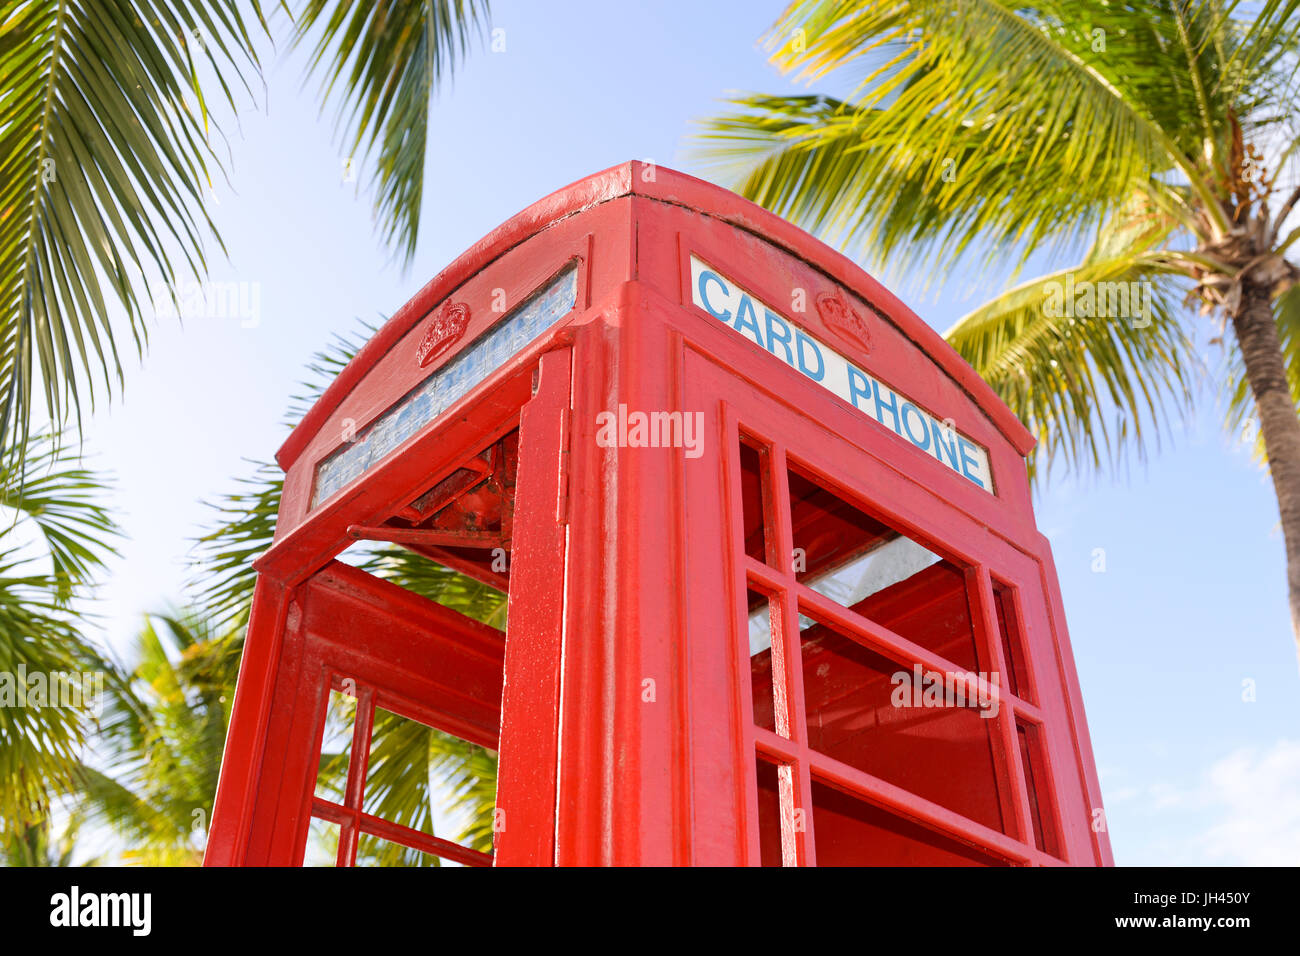 Cuadro teléfono rojo británico en la playa de Coconut grove, antigua Foto de stock